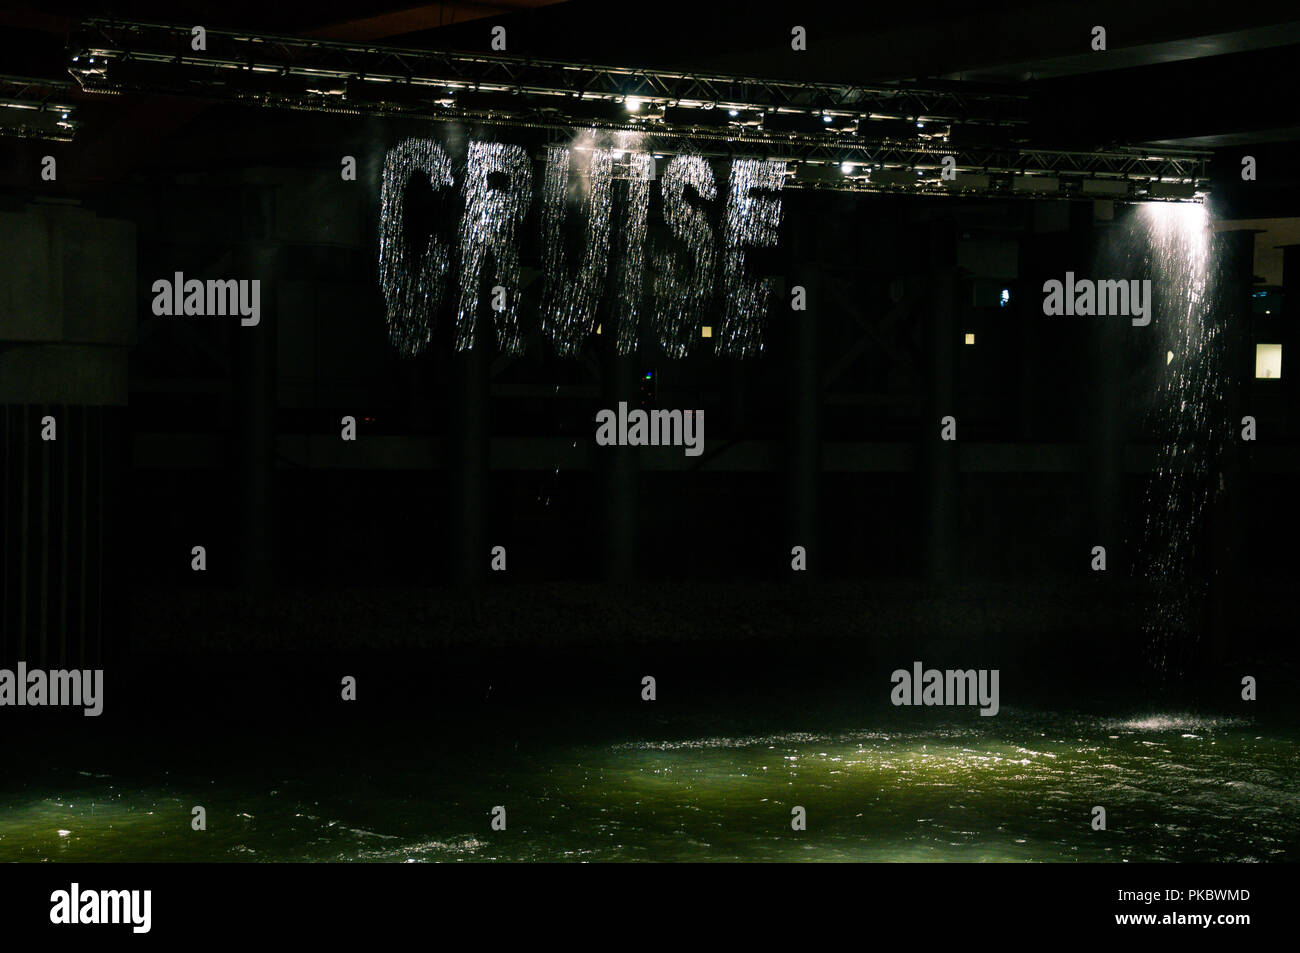 La parola "crociere" scritto in caduta in acqua durante la notte presso il London Olympic Park 2012, Inghilterra, Regno Unito Foto Stock